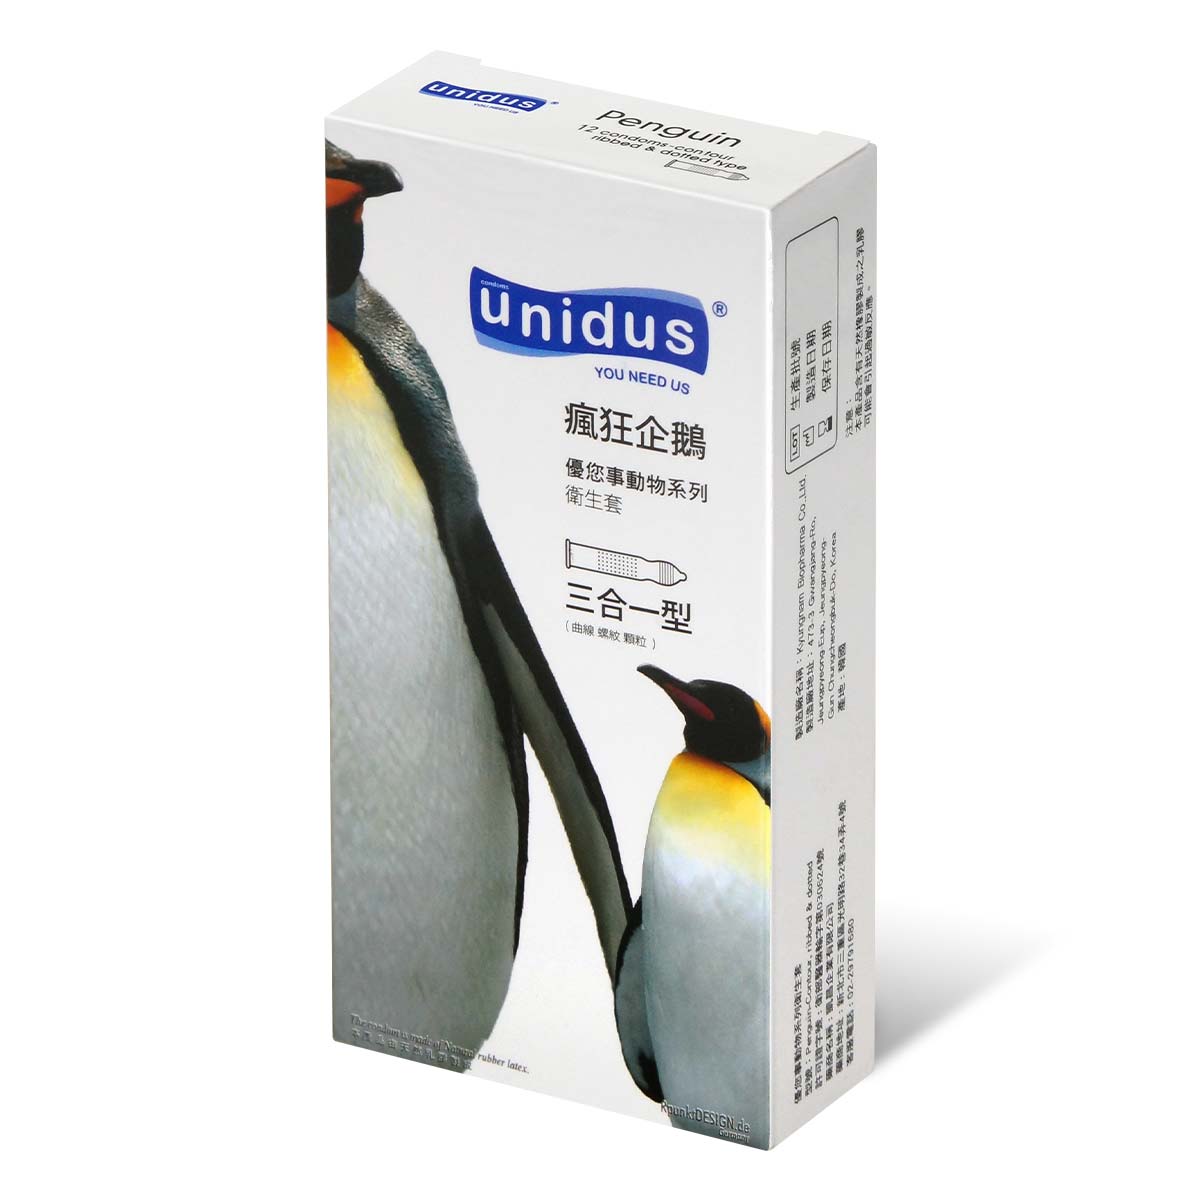 Unidus 優您事動物系列保險套 瘋狂企鵝 三合一型 12 入-p_1